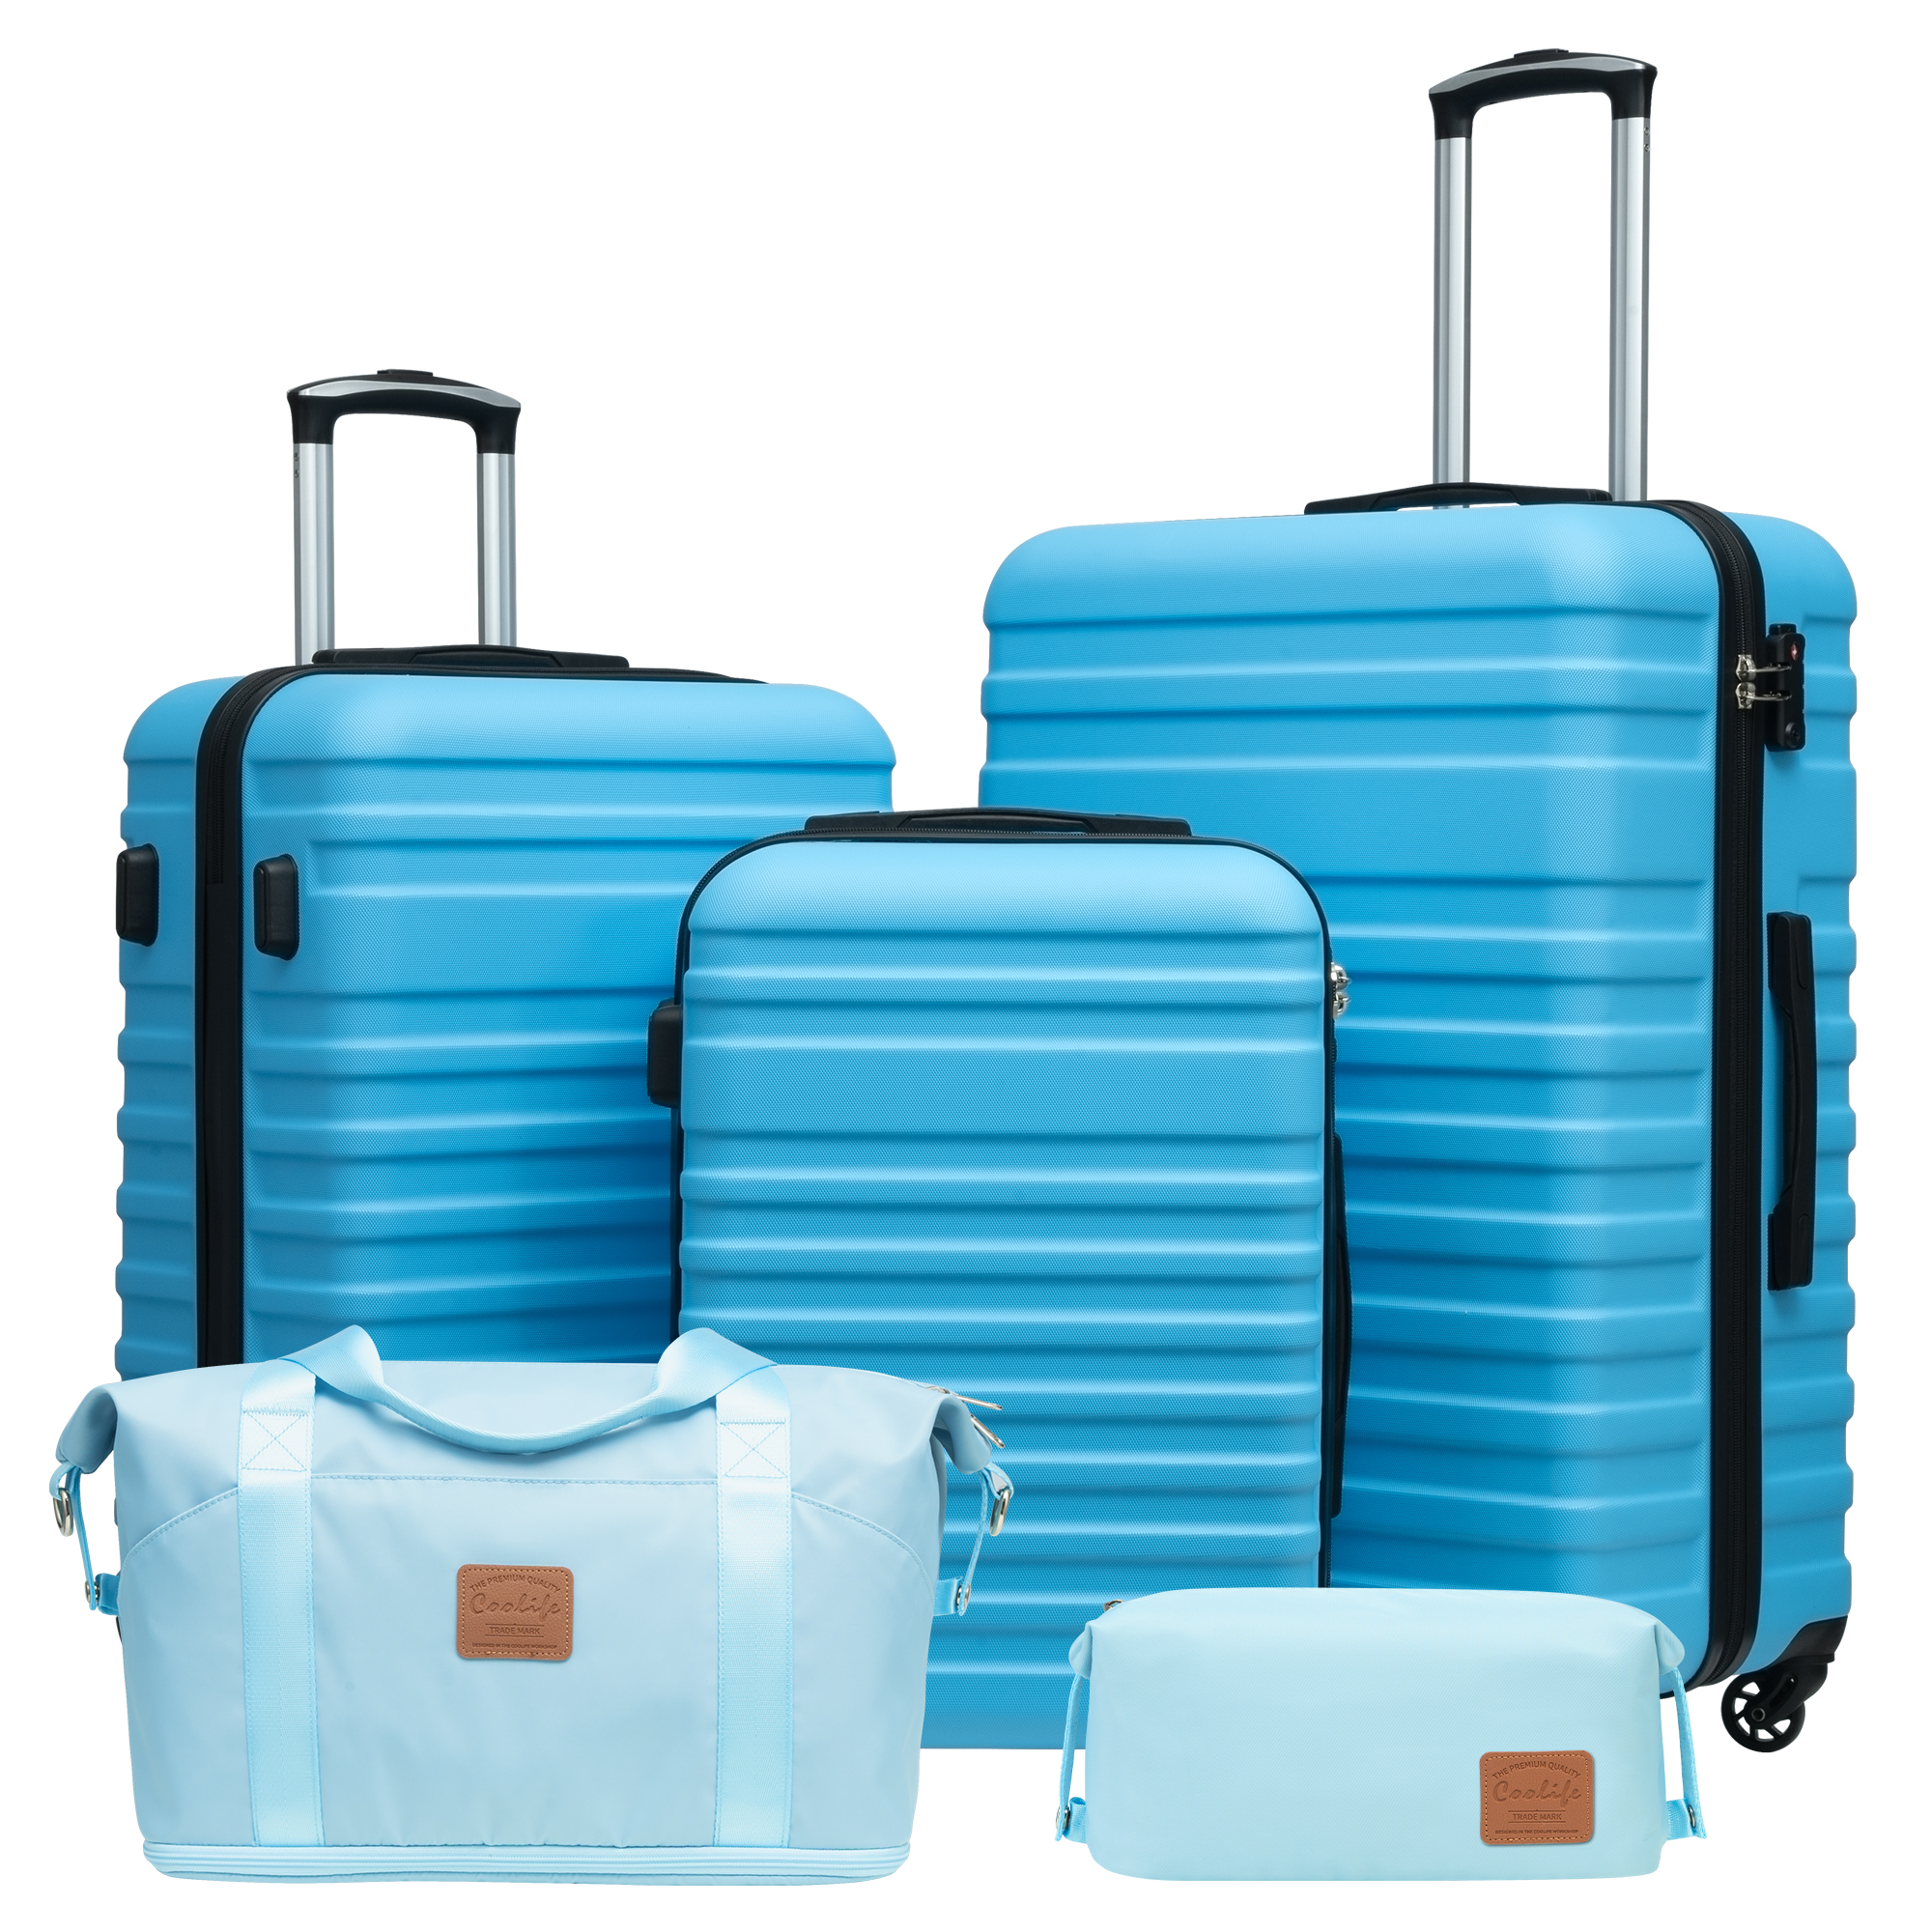 Coolife Luggage Sets Suitcase Set Carry On Hardside Luggage with TSA Lock Spinner Wheels